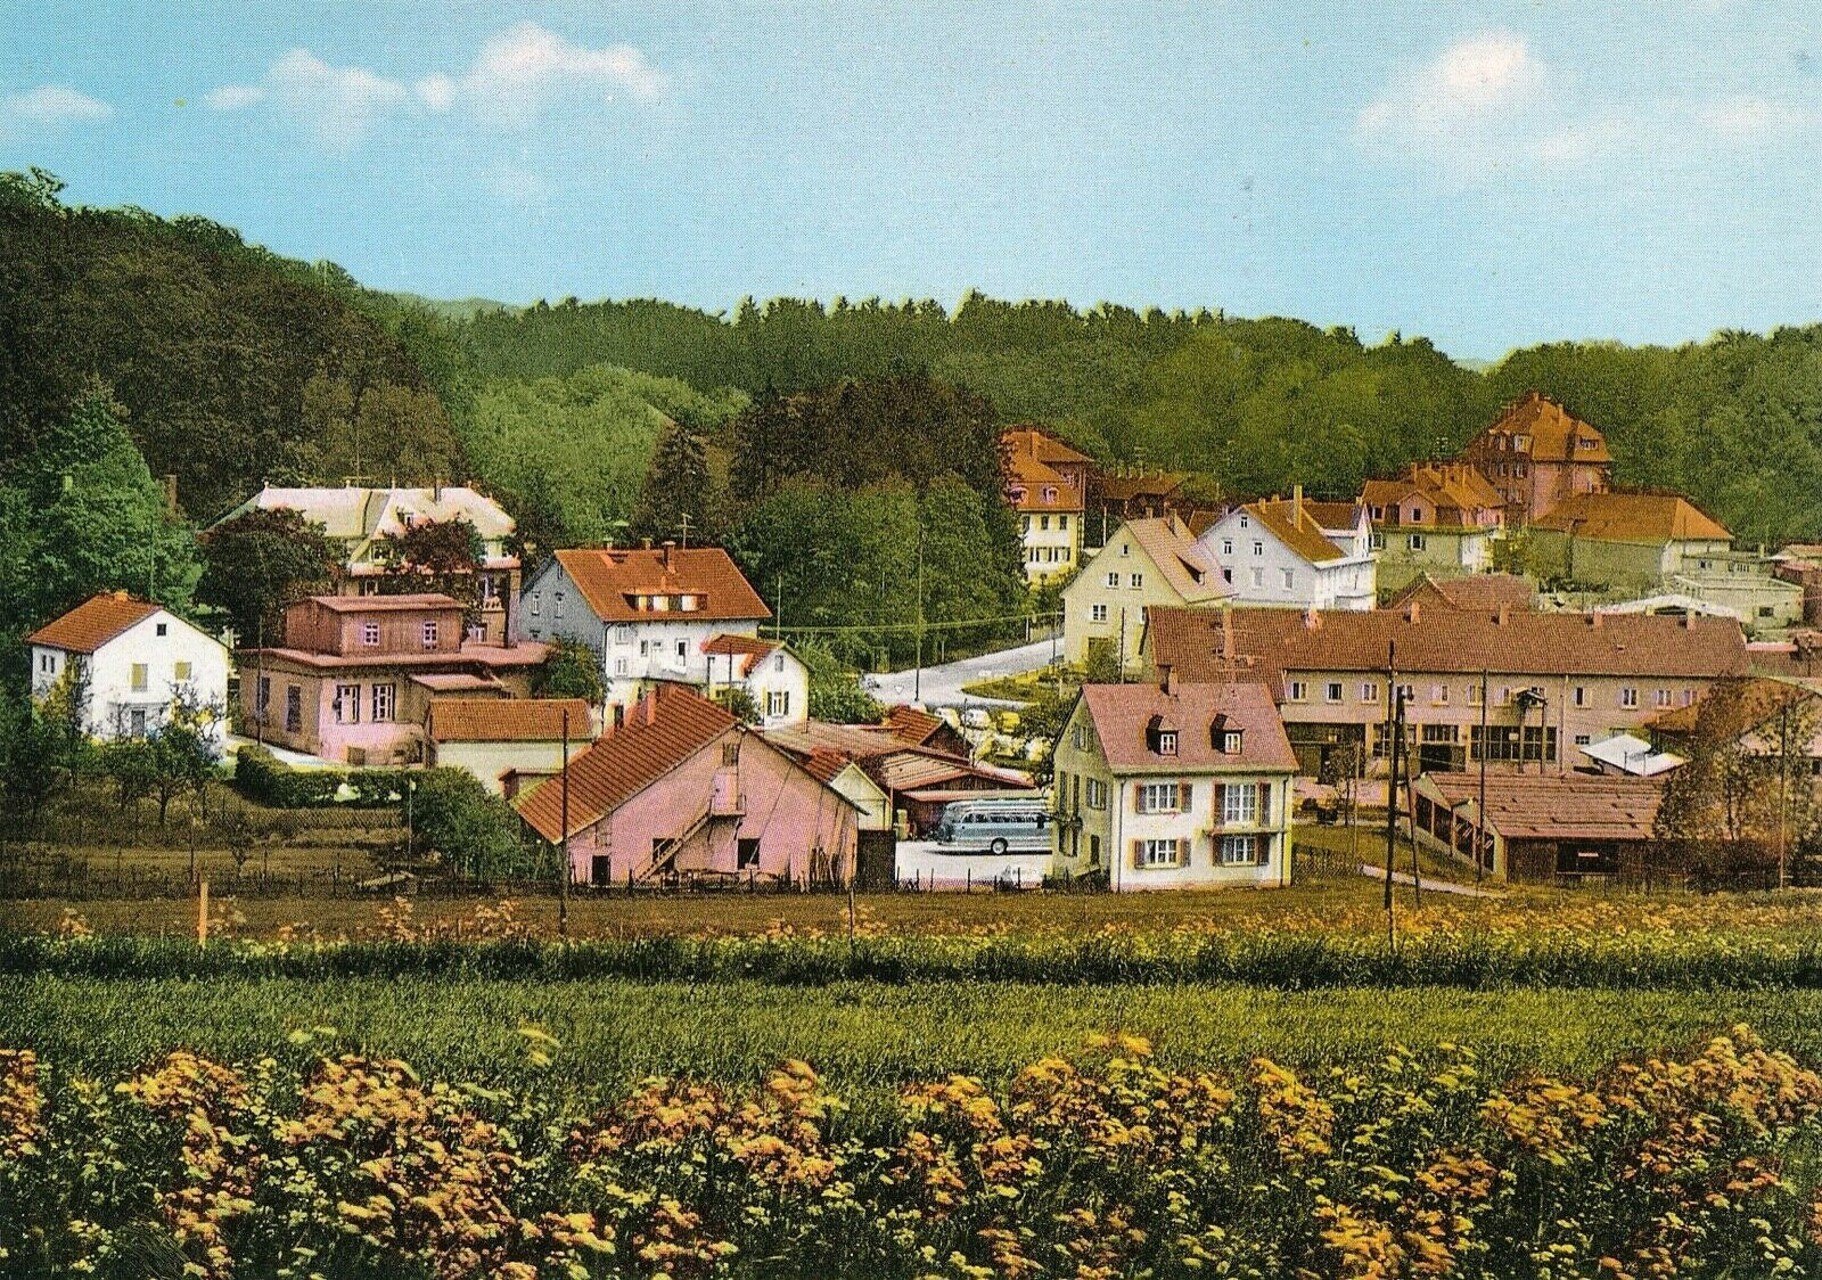 Stadtführung Das Vorlager beim Alten Lager in Auingen in Münsingen im Biosphärengebiet Schwäbische Alb. Ein altes buntes Bild von einem kleinen Dorf im Sommer. Im Vordergrund sind einige Blumenwiesen, im Hintergrund sind weiße, gelbe und rosa Gebäude.